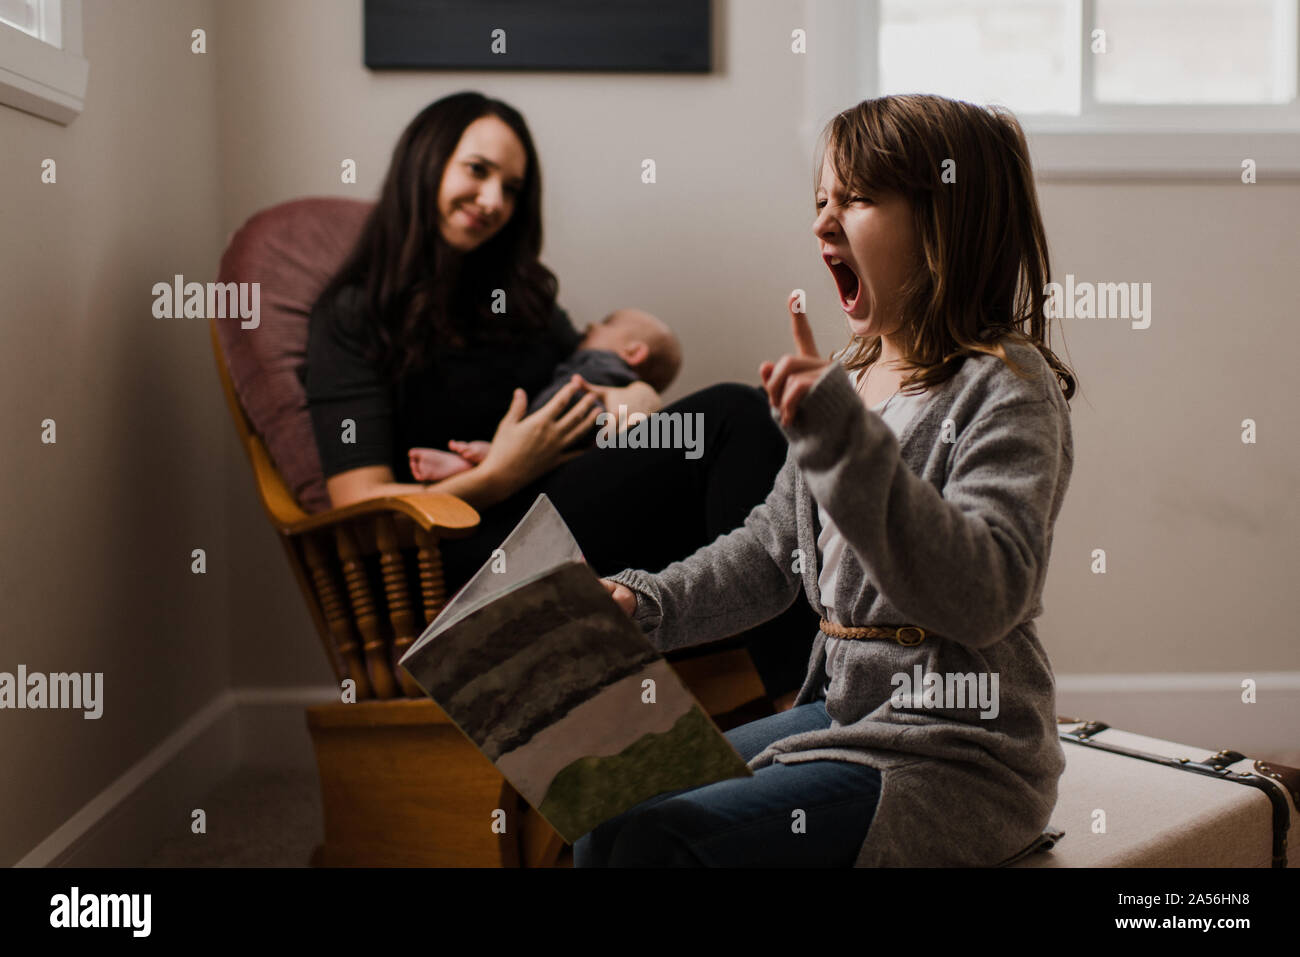 Girl with book pulling faces, alors que mère berceaux frère bébé dans la salle de séjour fauteuil Banque D'Images